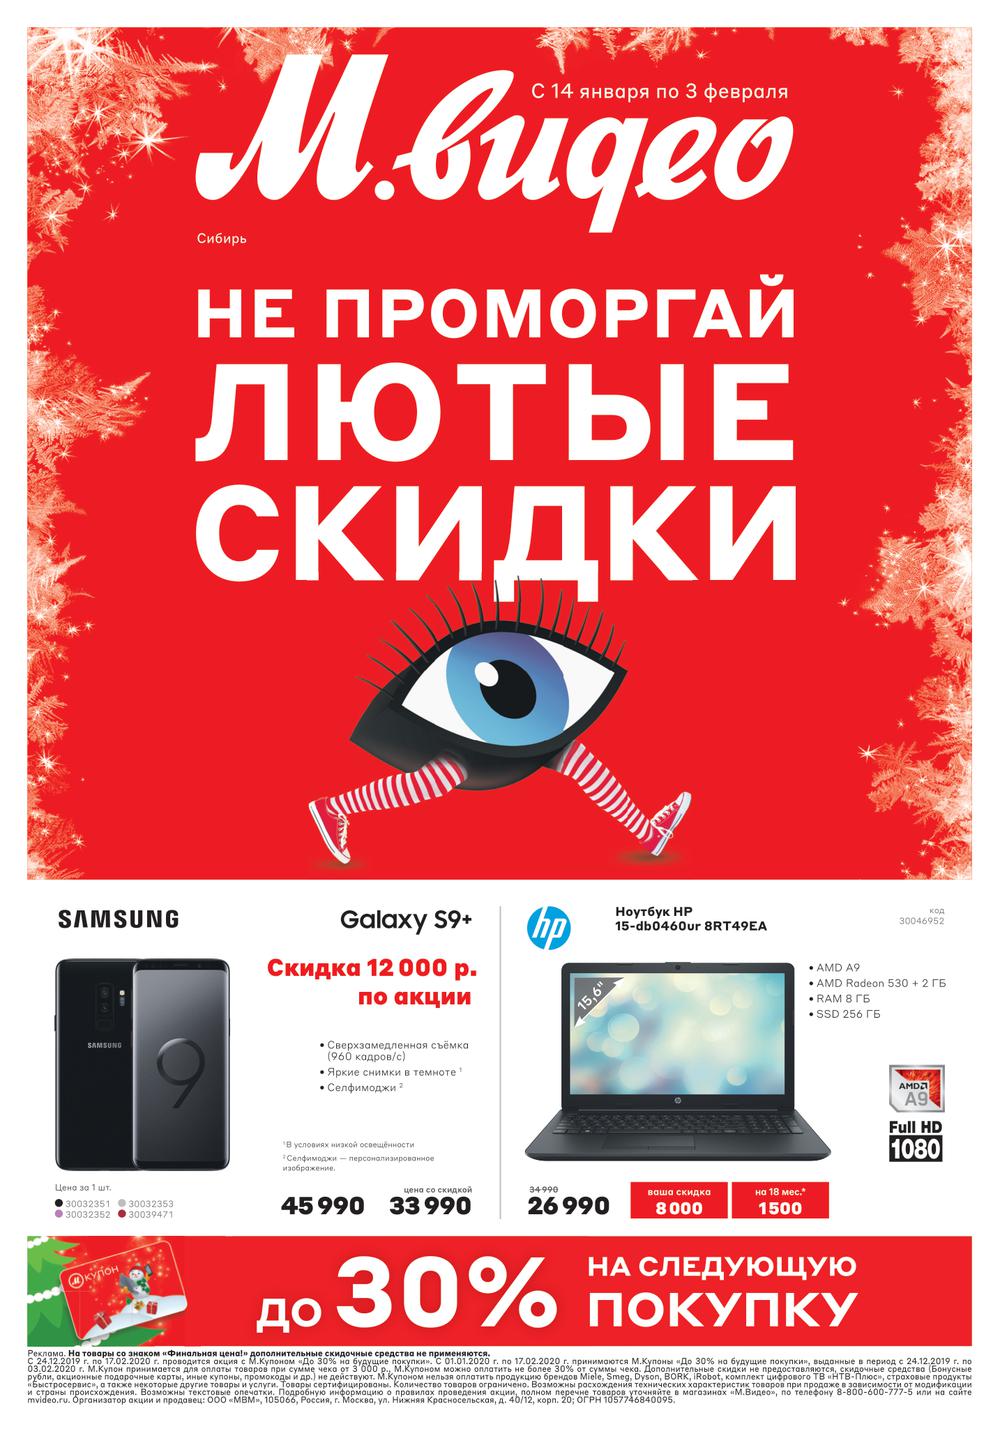 Купить Ноутбук В Красноярске По Акции